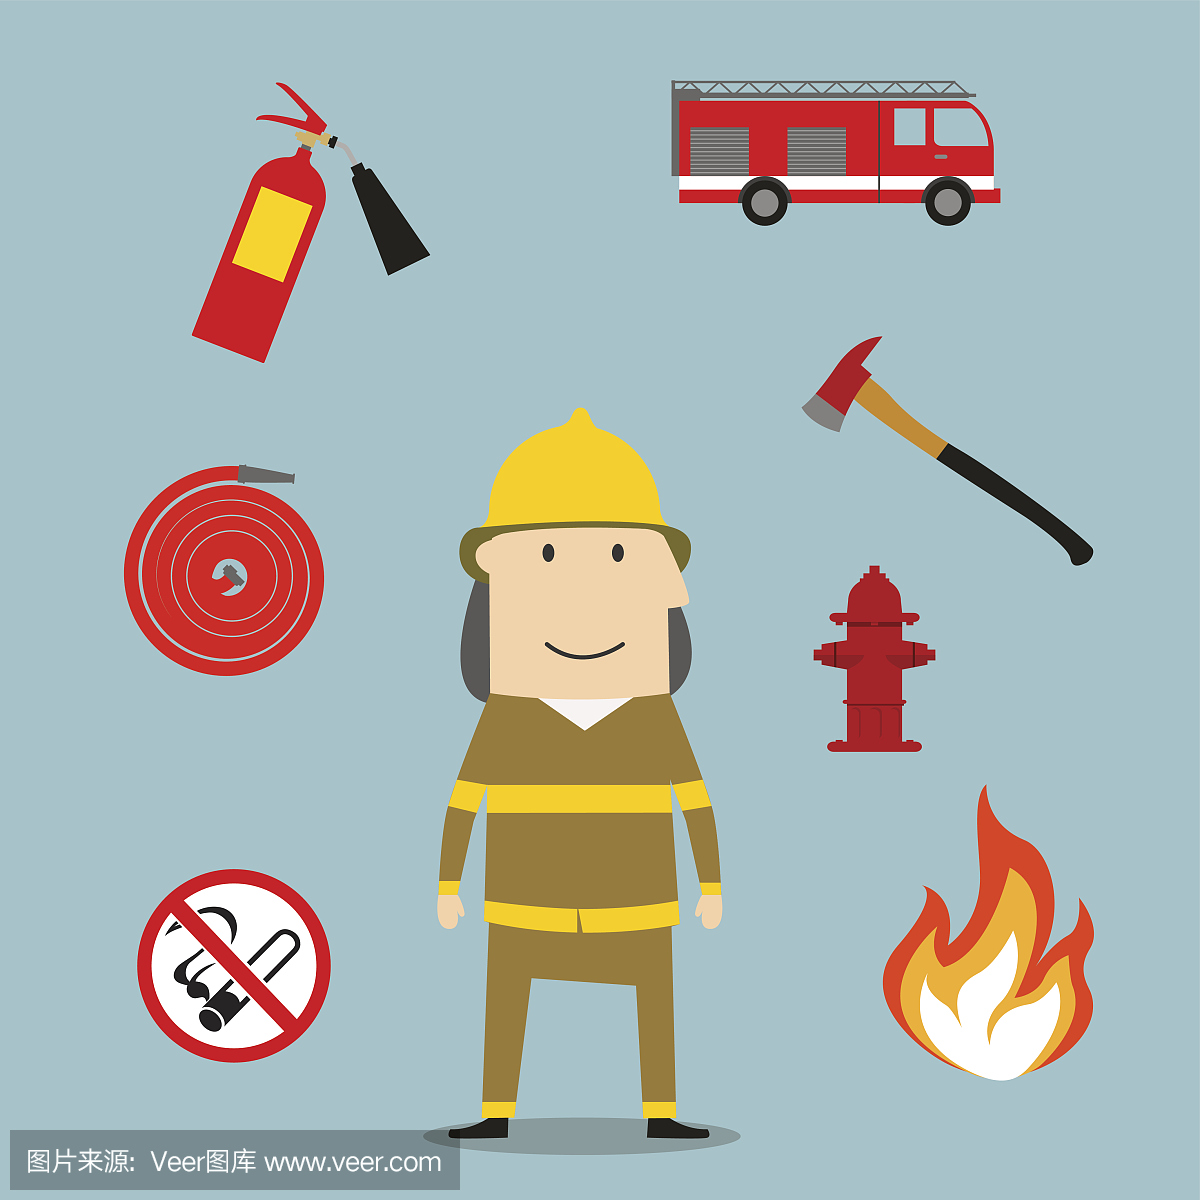 强大的消防员与消防工具